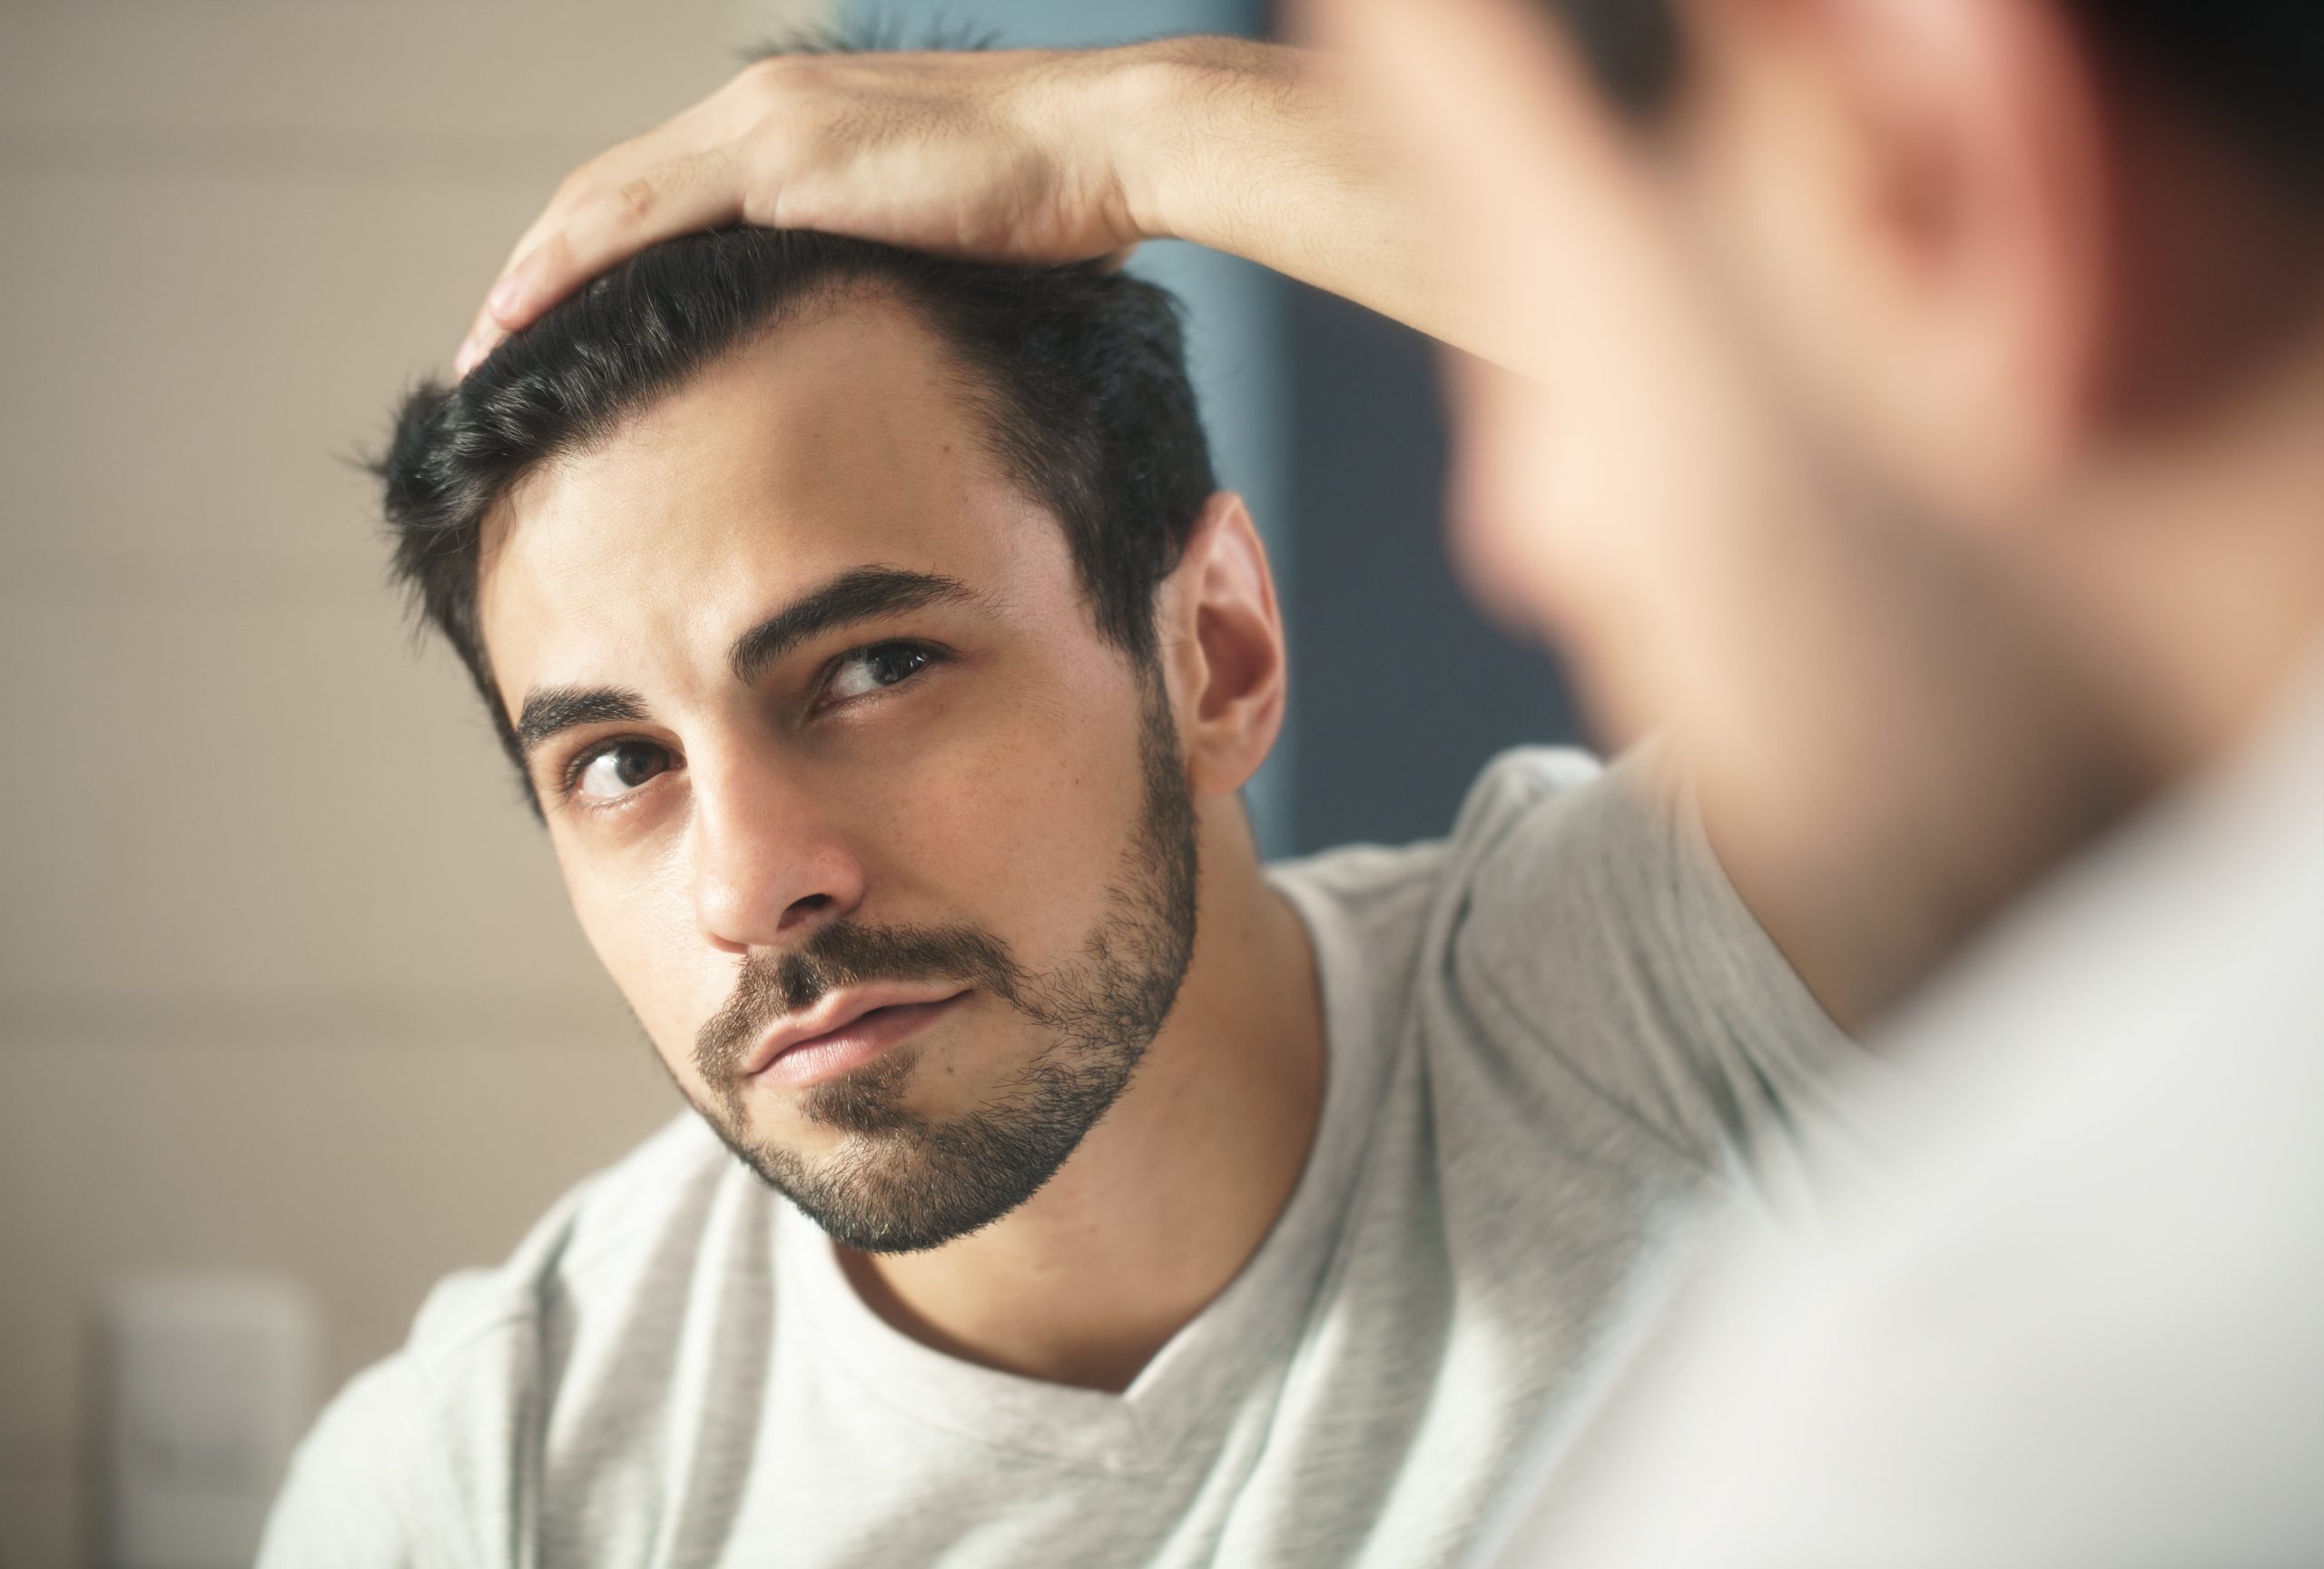 Łysienie u mężczyzn – przyczyny i leczenie